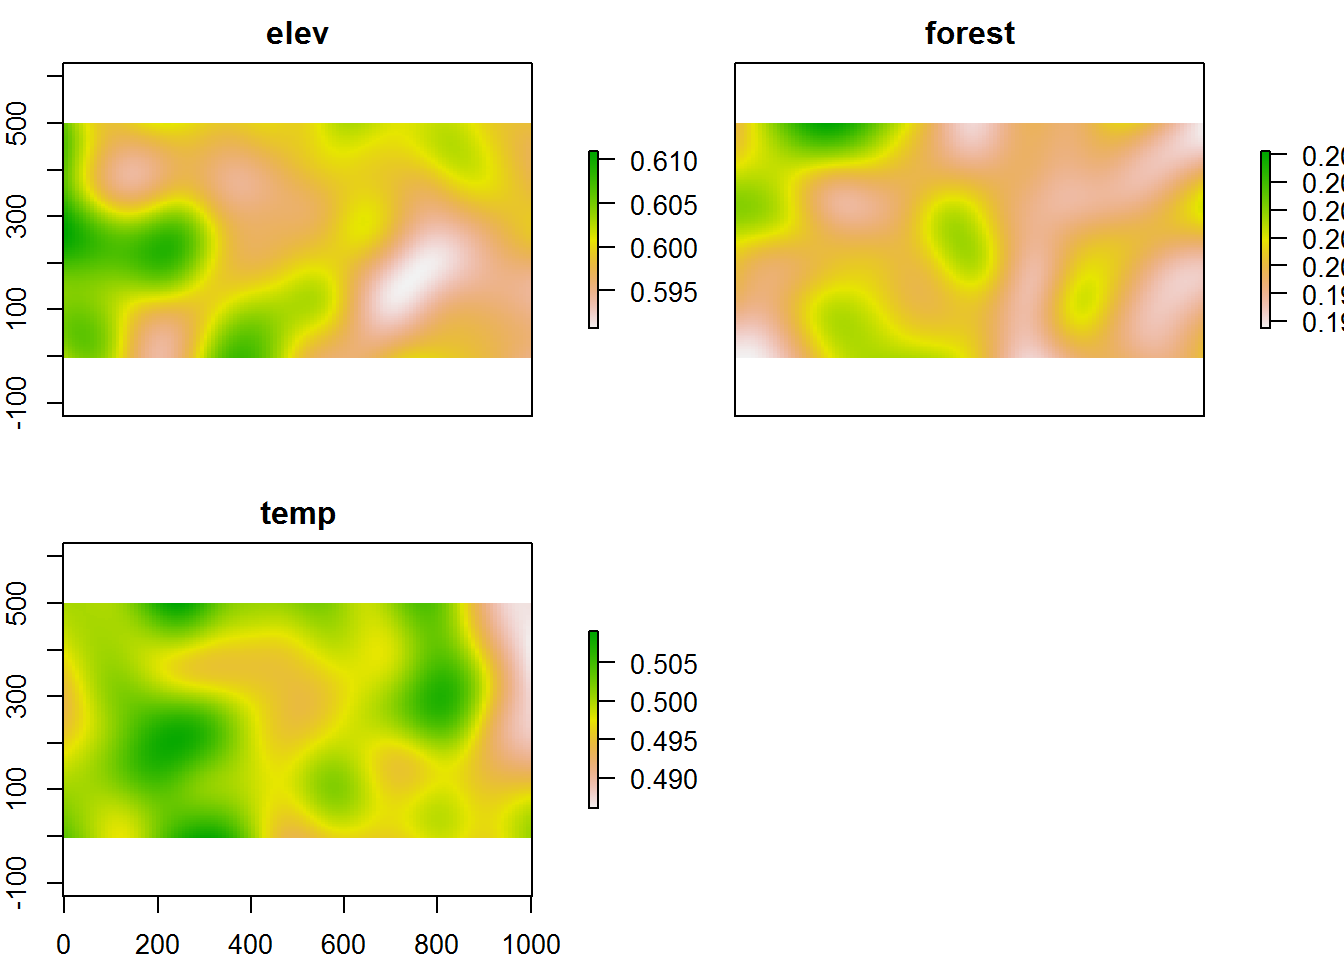 Mapa simulado de elevación, bosque y temperatura.